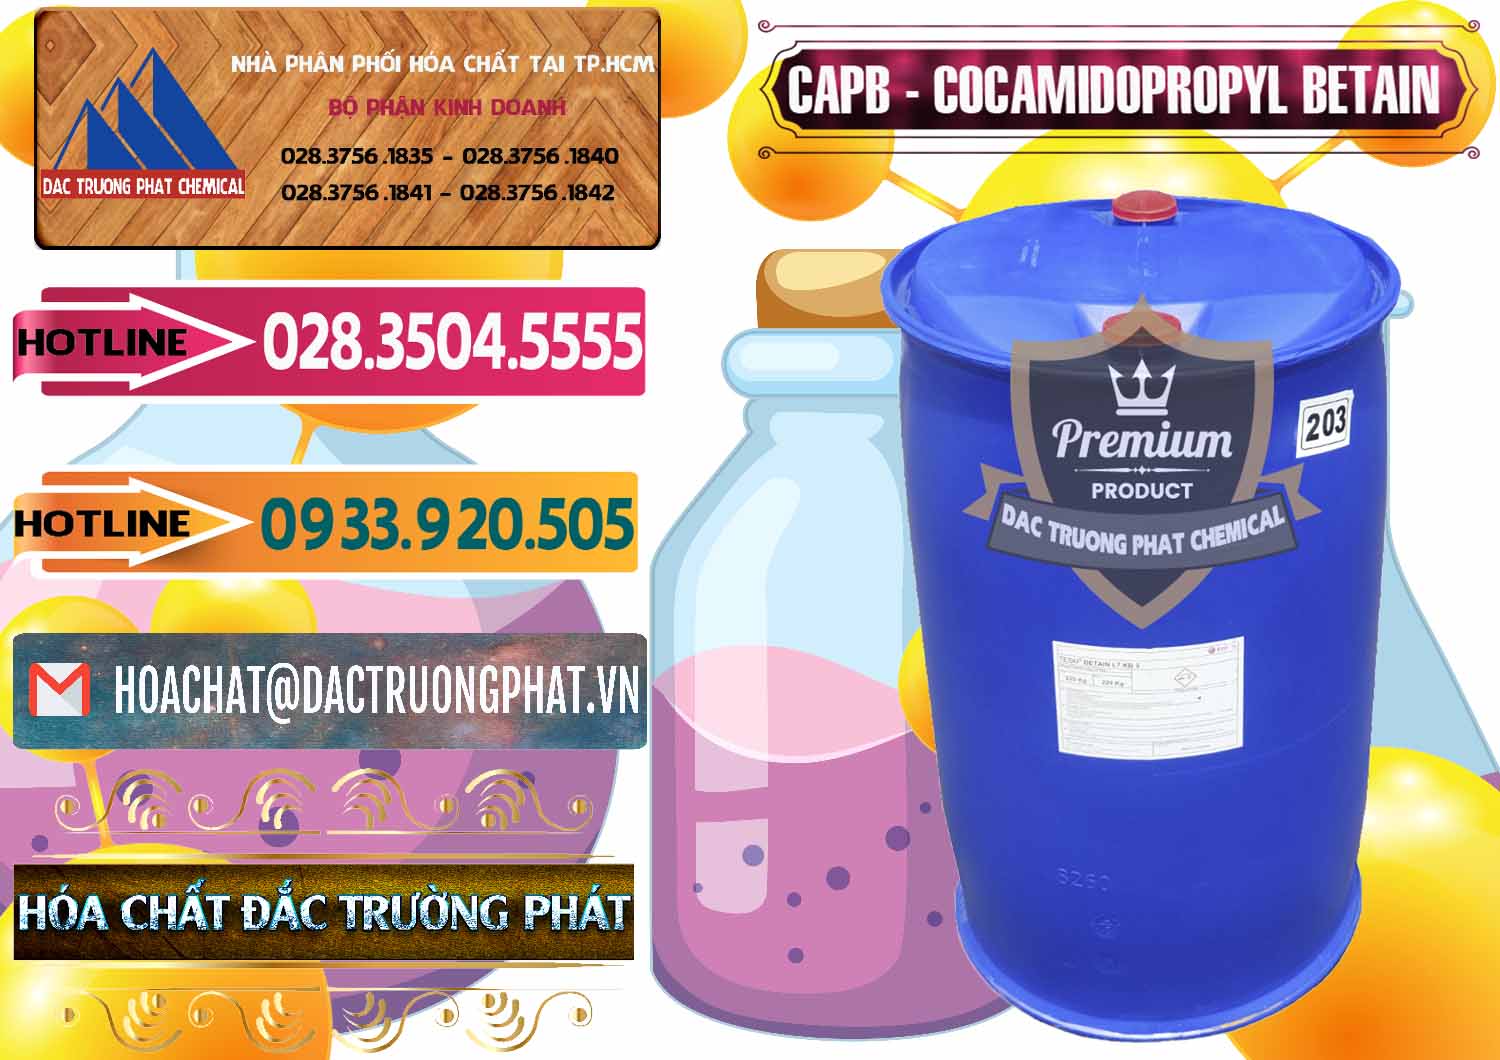 Đơn vị chuyên phân phối & bán Cocamidopropyl Betaine - CAPB Tego Indonesia - 0327 - Nơi chuyên cung cấp ( nhập khẩu ) hóa chất tại TP.HCM - dactruongphat.vn